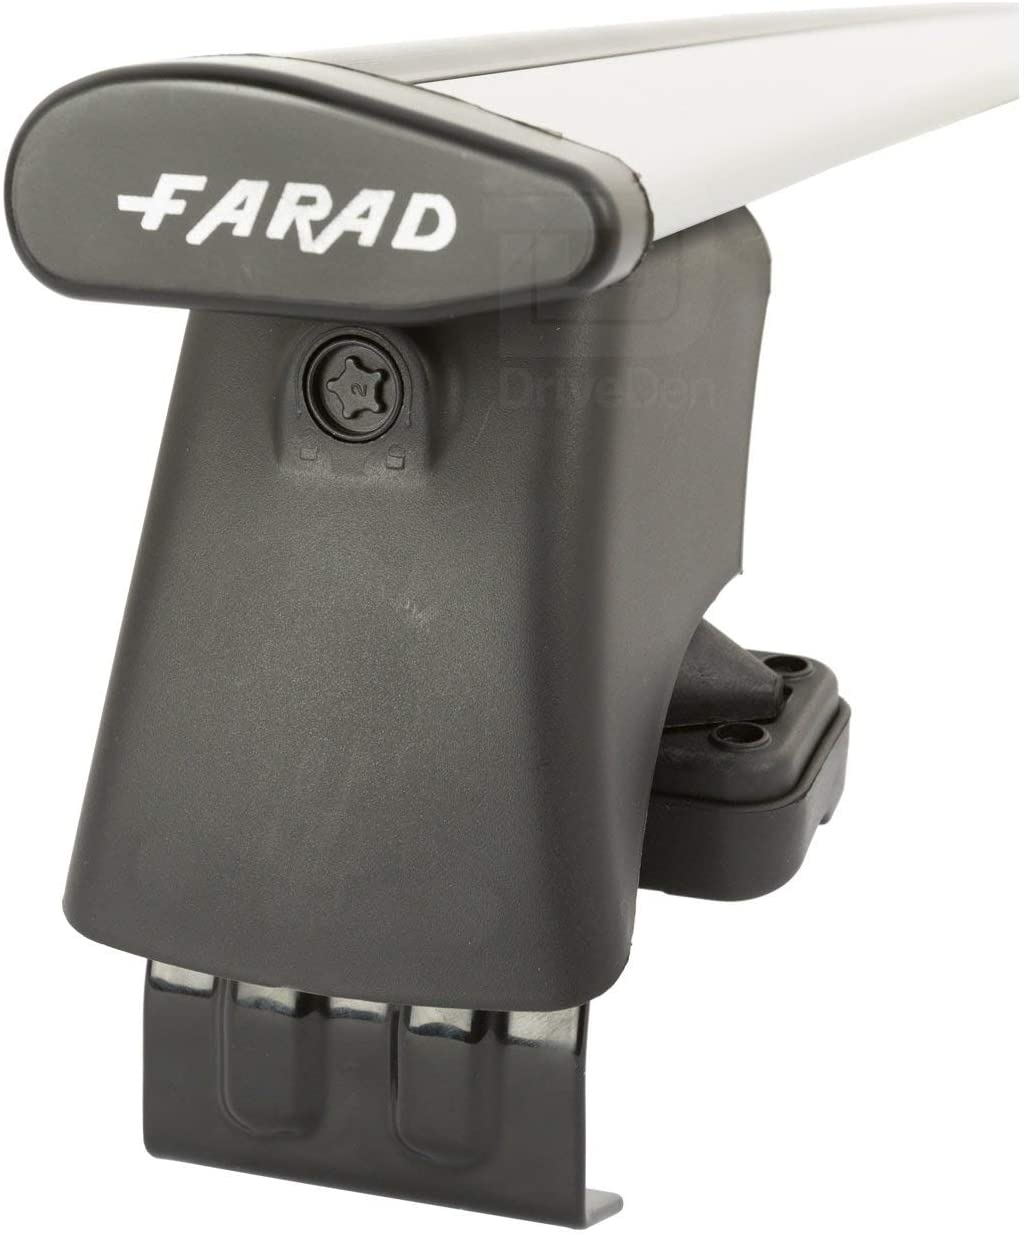 FARAD-Kit H2 per barre portatutto - Chevrolet Matiz 2005-2009 (senza corrimano)